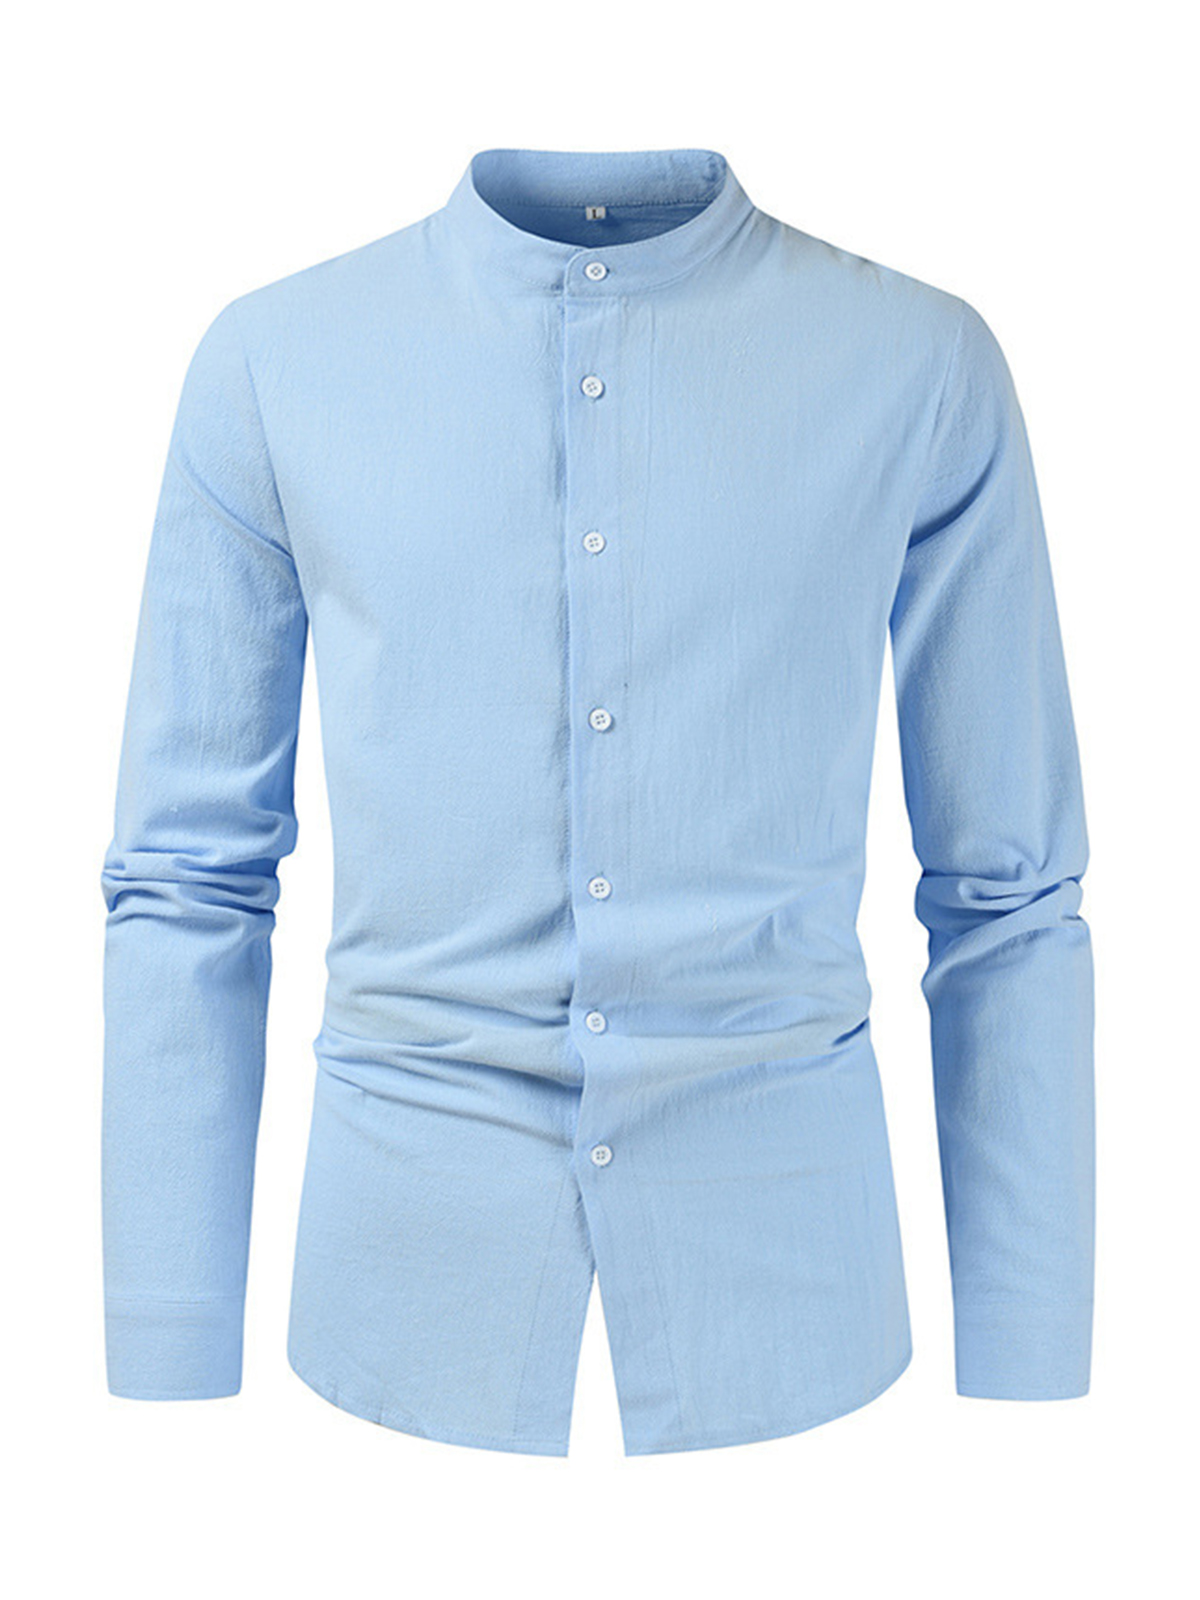 Men's solid color cotton and linen long sleeve shirt PLUSCLOTHESMAN